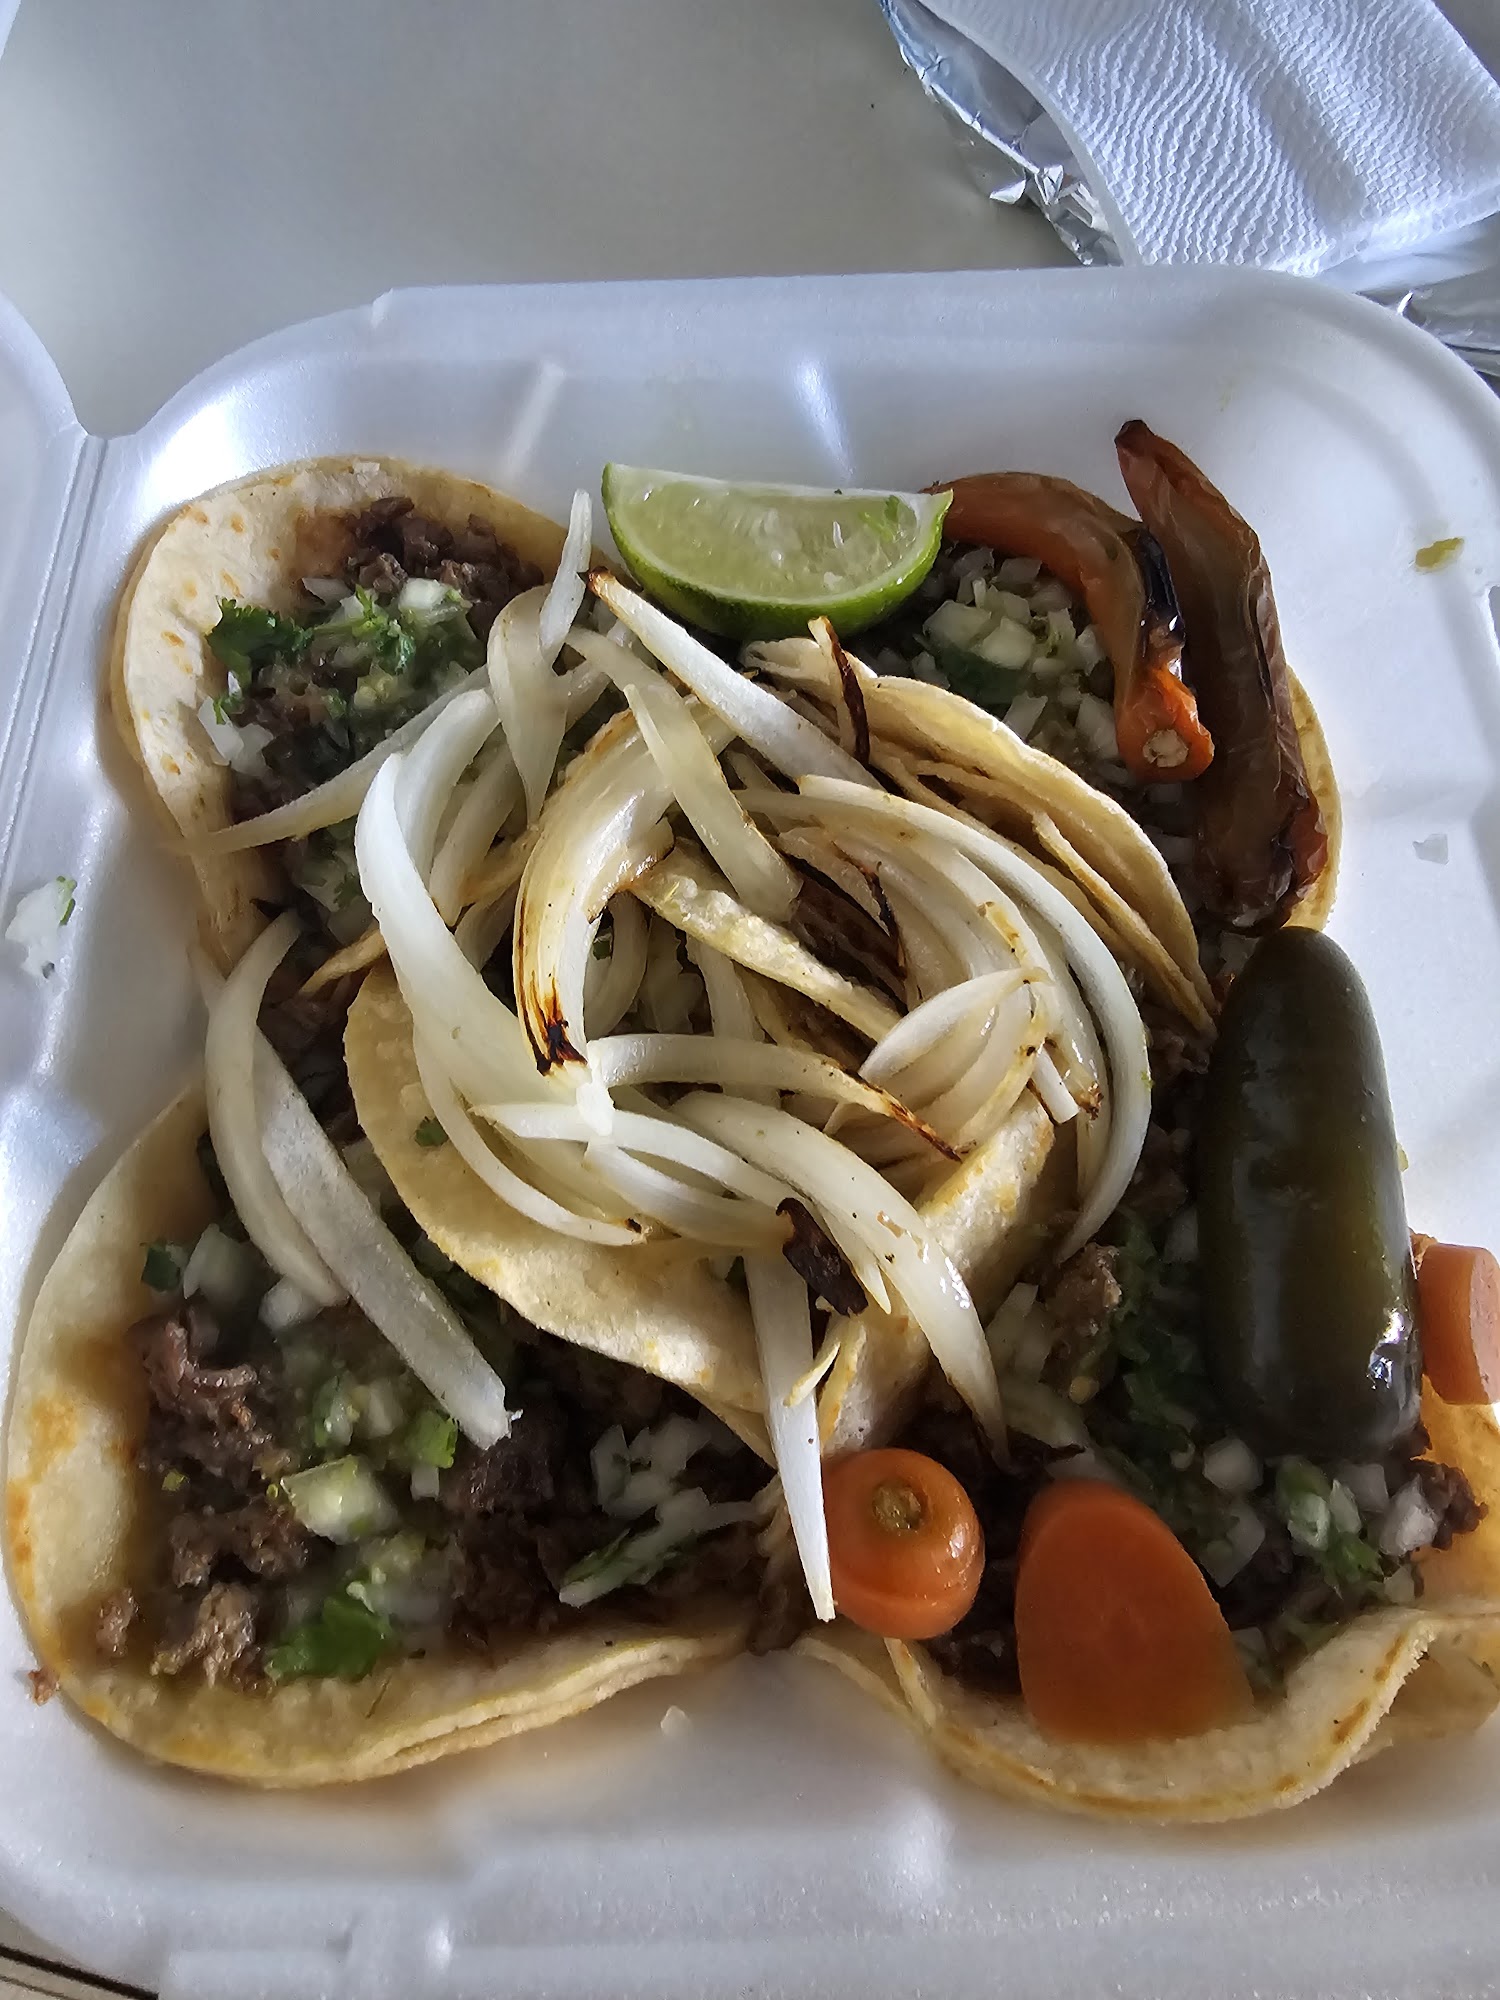 Tacos Michoacan